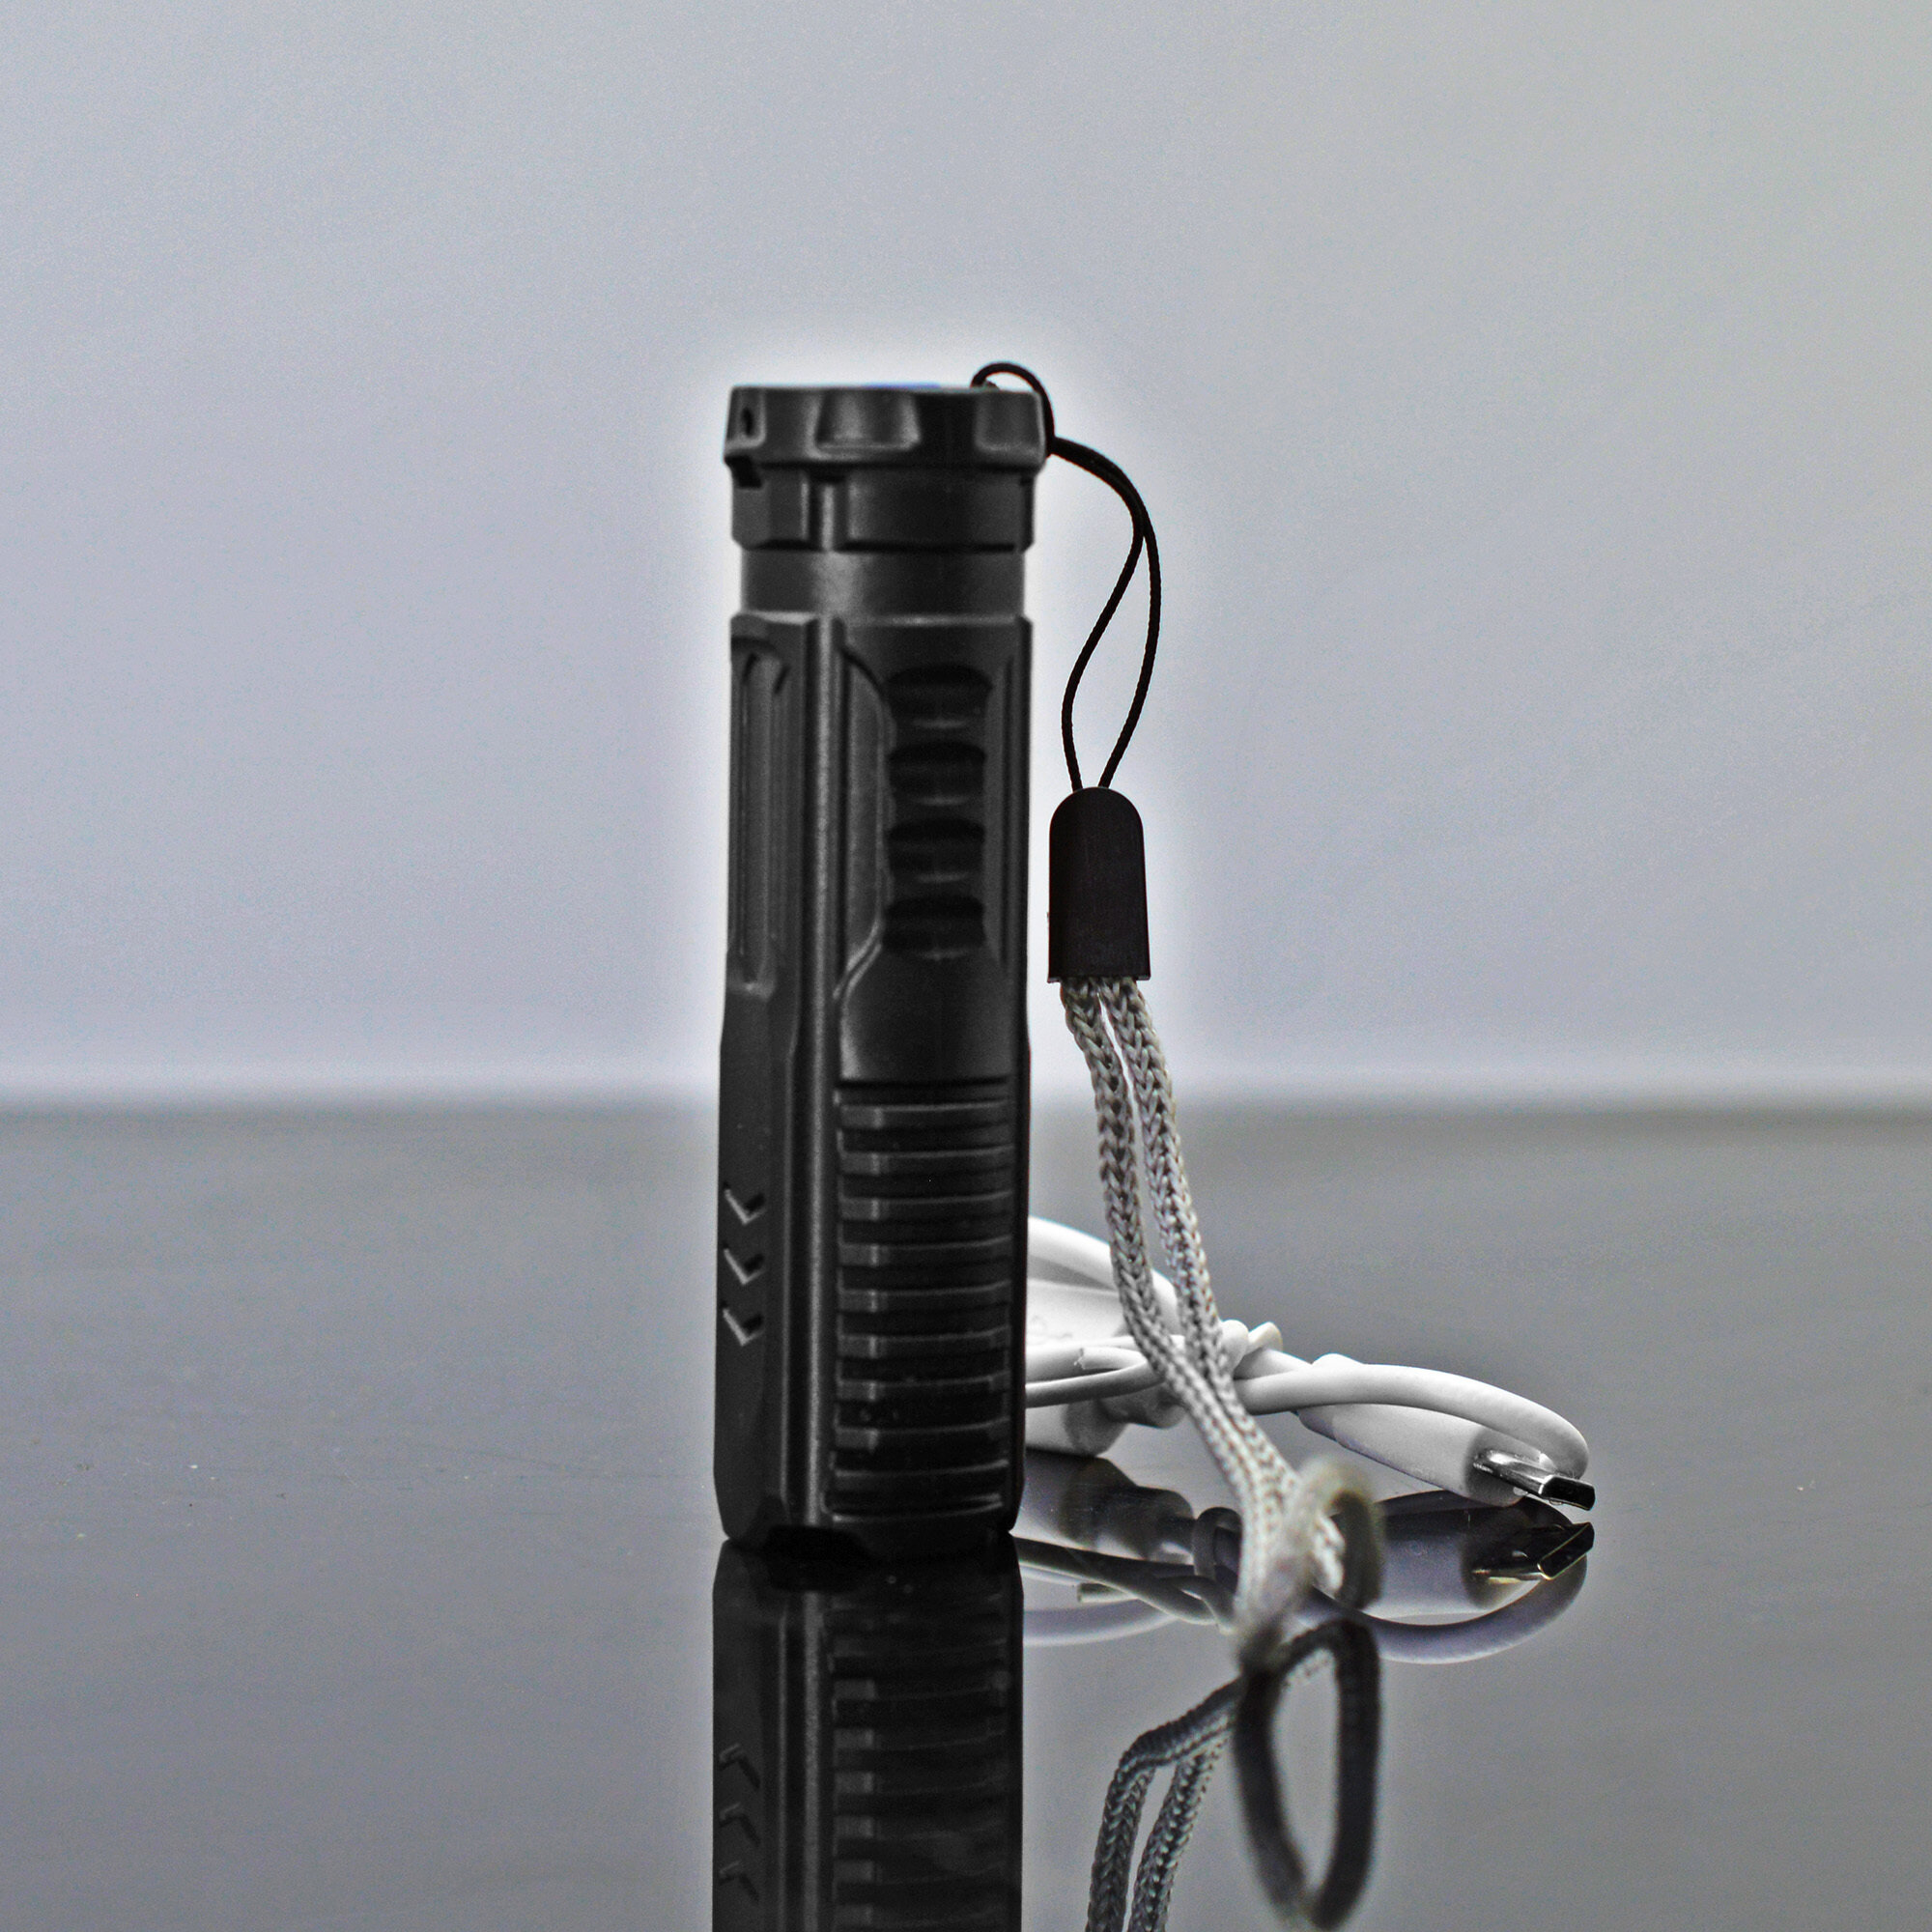 Водонепроницаемый портативный карманный фонарь Y-1540 / для туризма для охоты для рыбалки / зарядка от micro USB / цвет - черный